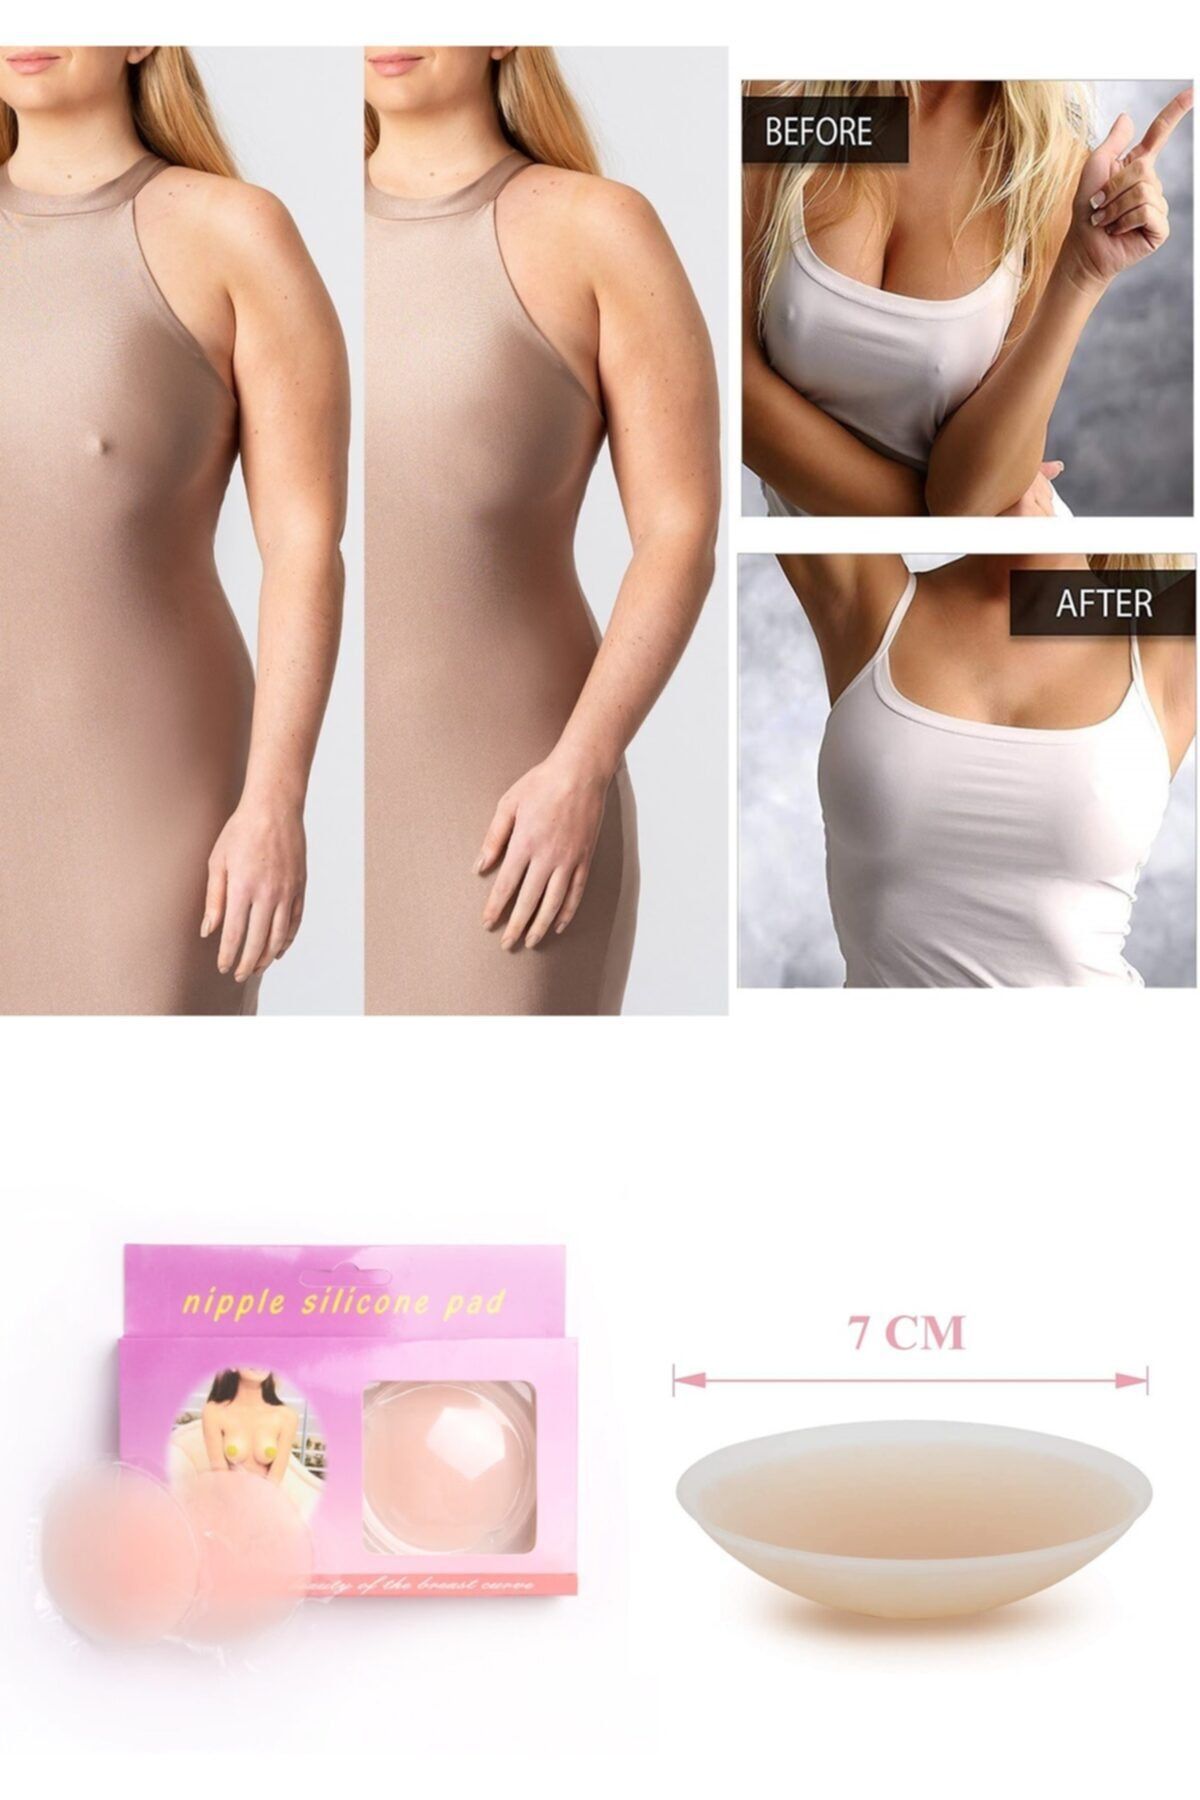 Genel Markalar Kadın Göğüs Ucu Gizleyen Kapatıcı Slikon Ped - Nipple Pad Çapı: 7cm